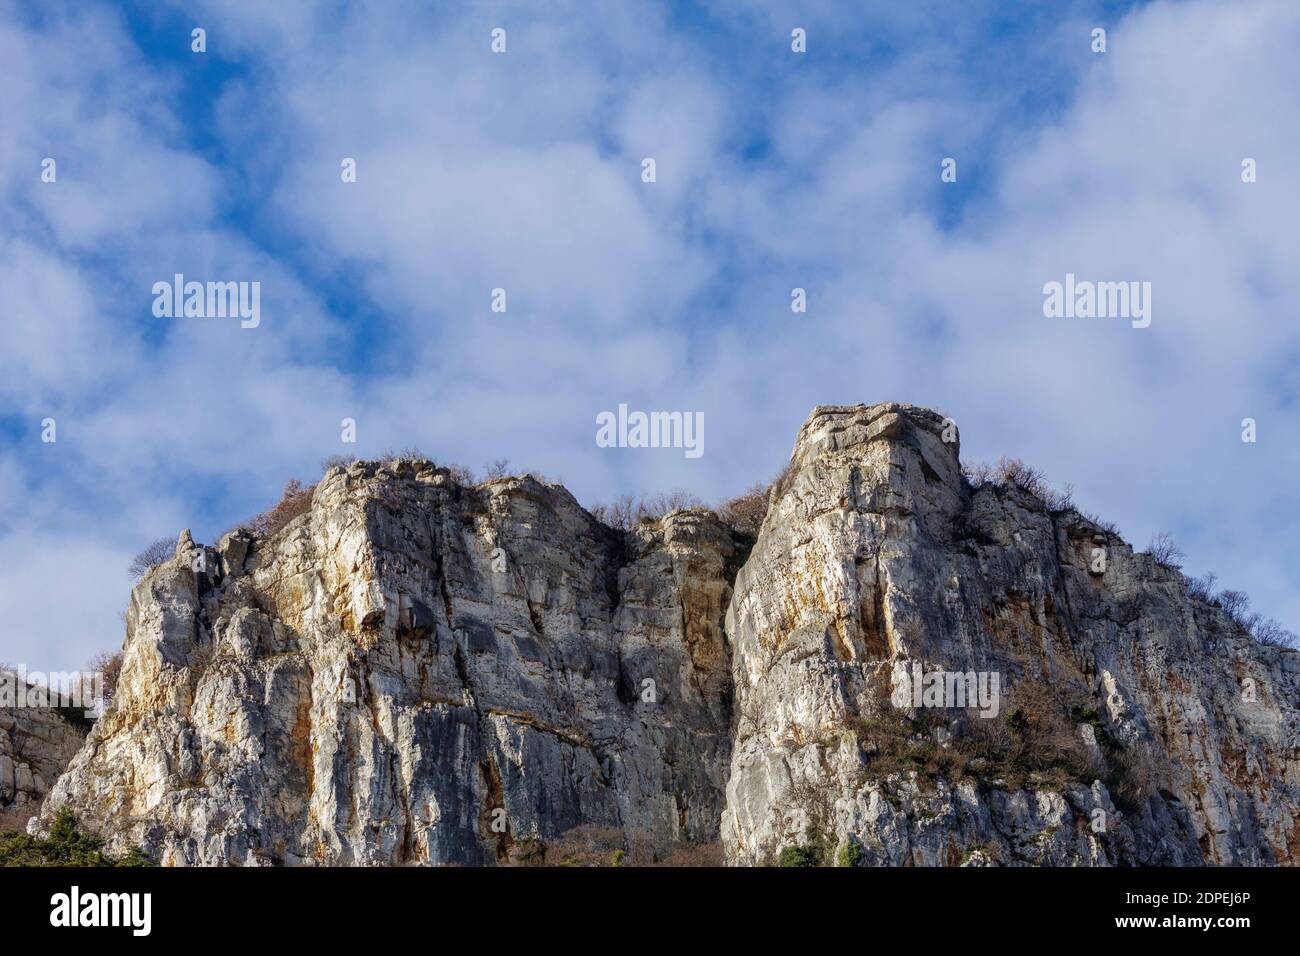 Mount Moscal von unten gesehen. Der Berg beherbergt eine ehemalige NATO-Basis in einem geheimen Bunker des alliierten Landstreitkommandos Südeuropas. Stockfoto